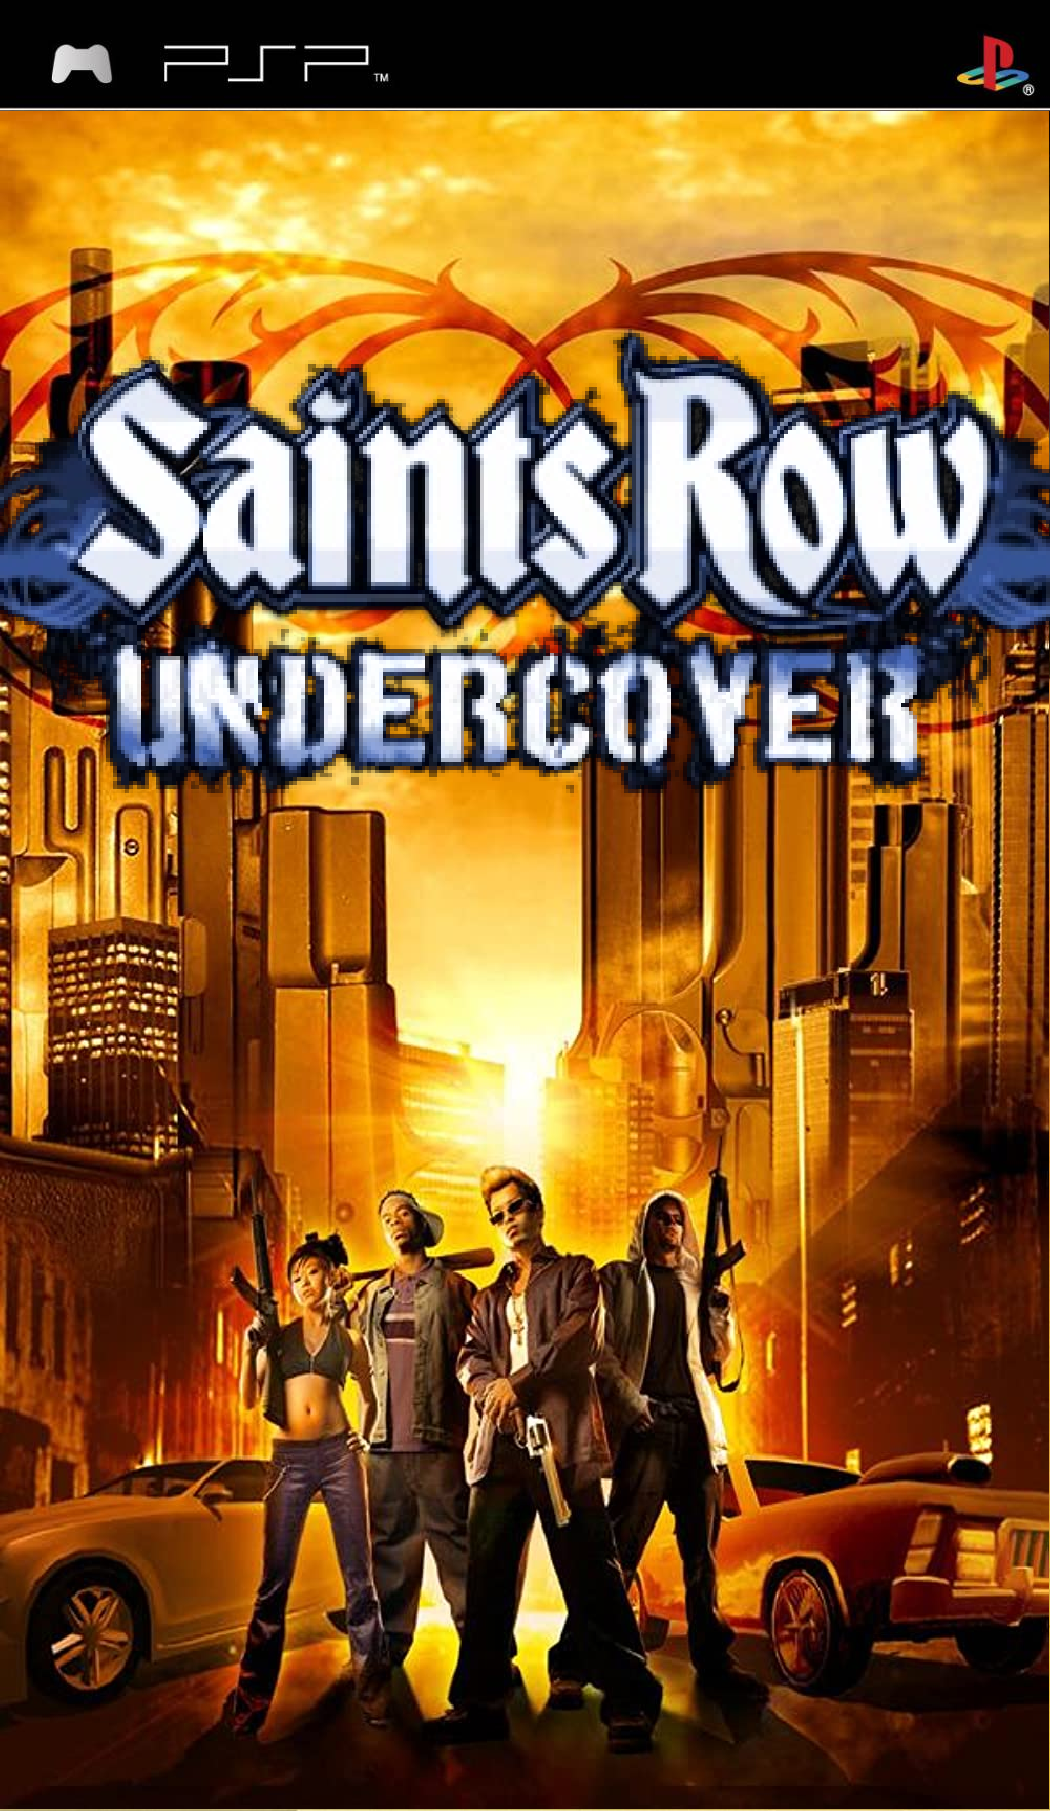 Saints Row Undercover